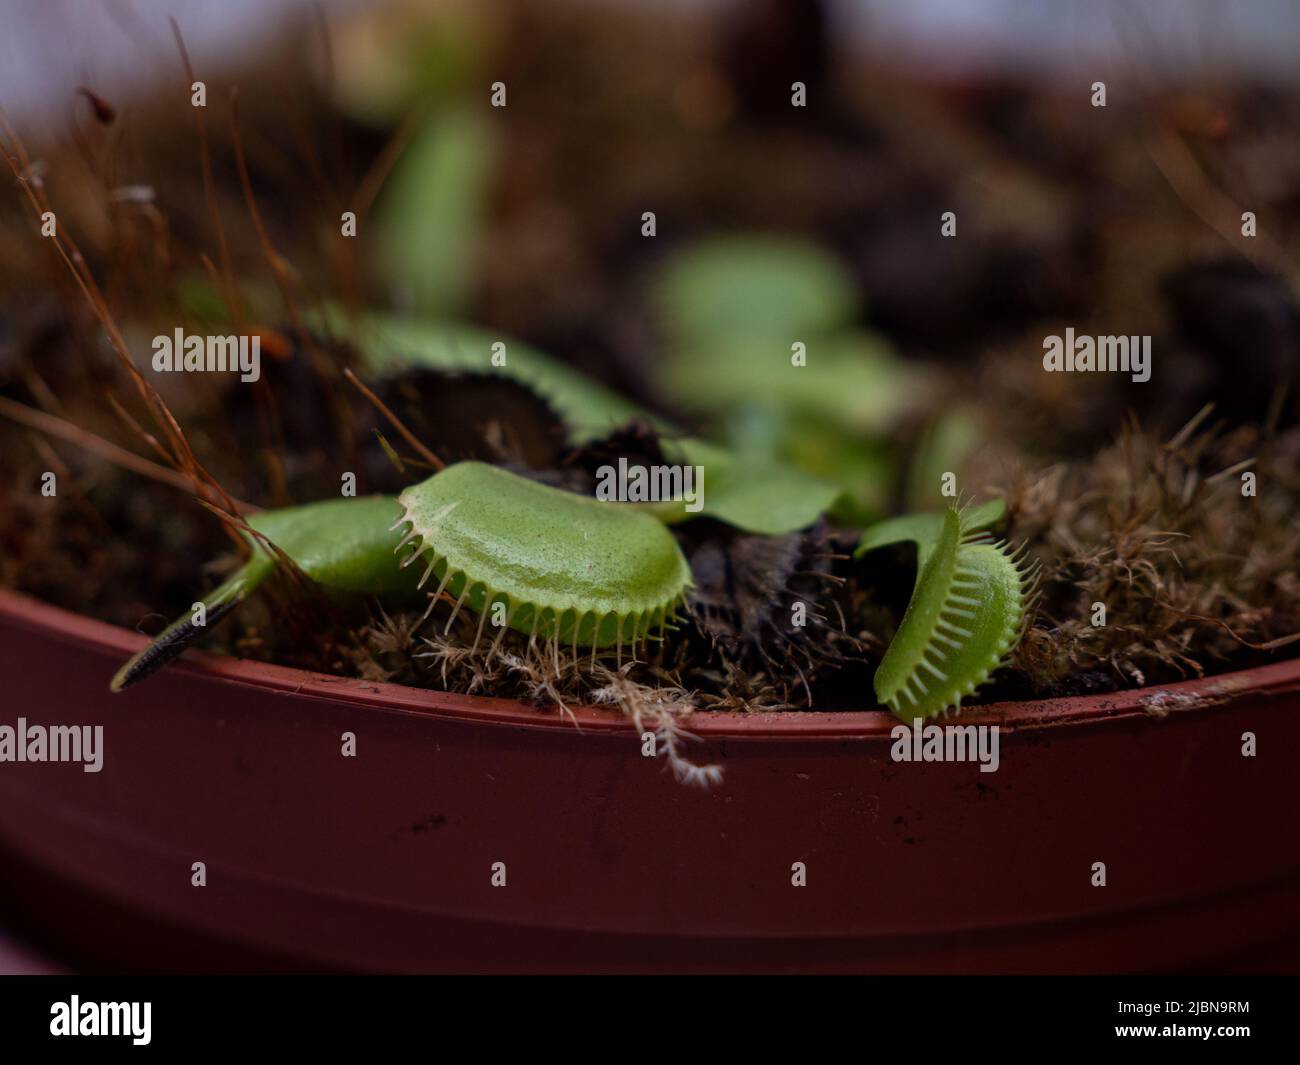 Venus flytrap in a pot close-up. Stock Photo